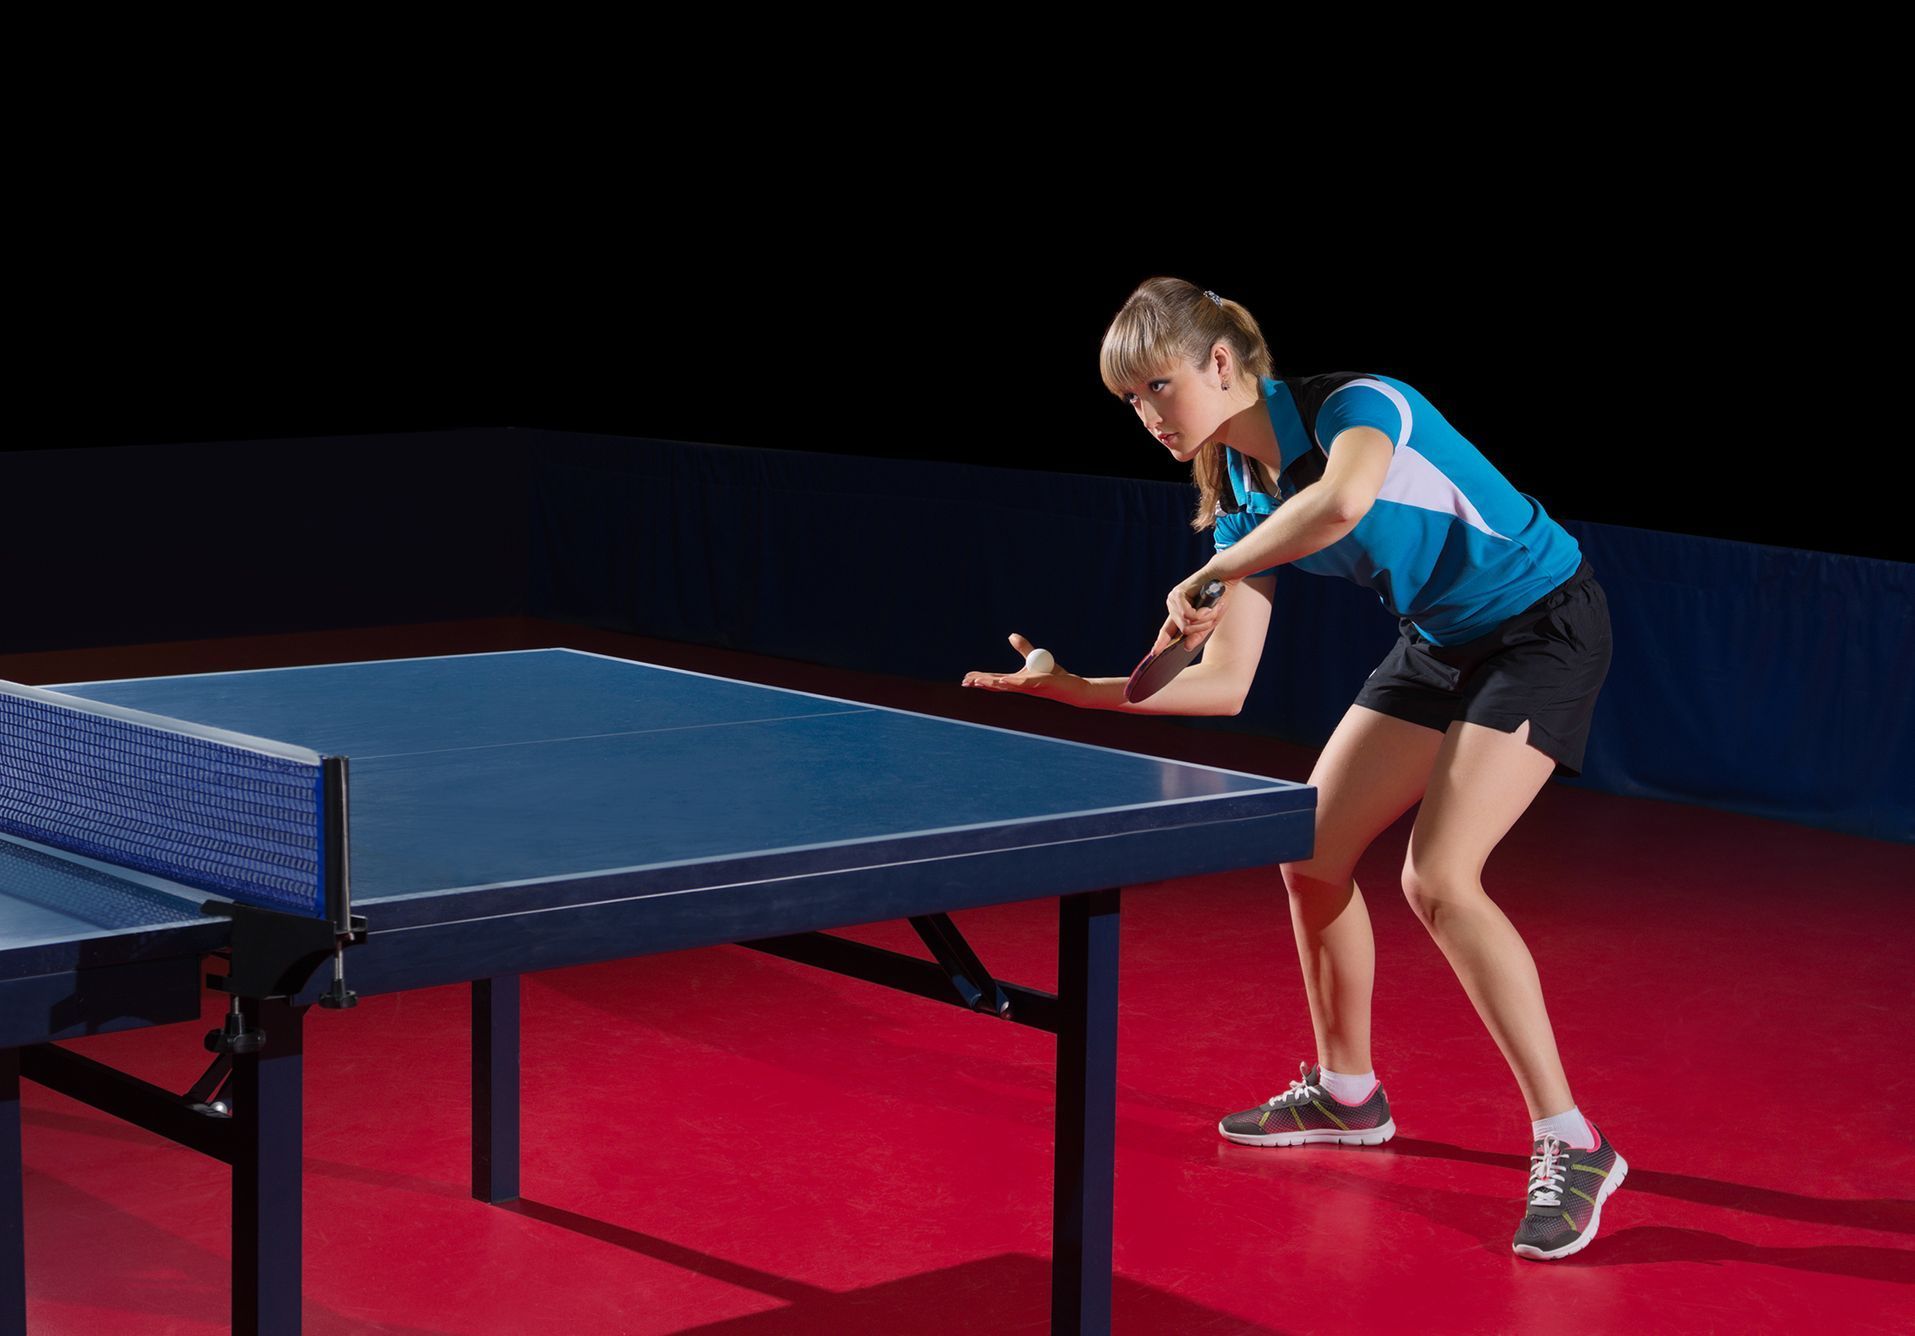 Ping pong / Inline / Sport / Volný čas / Shutterstock / Ilustrační snímek